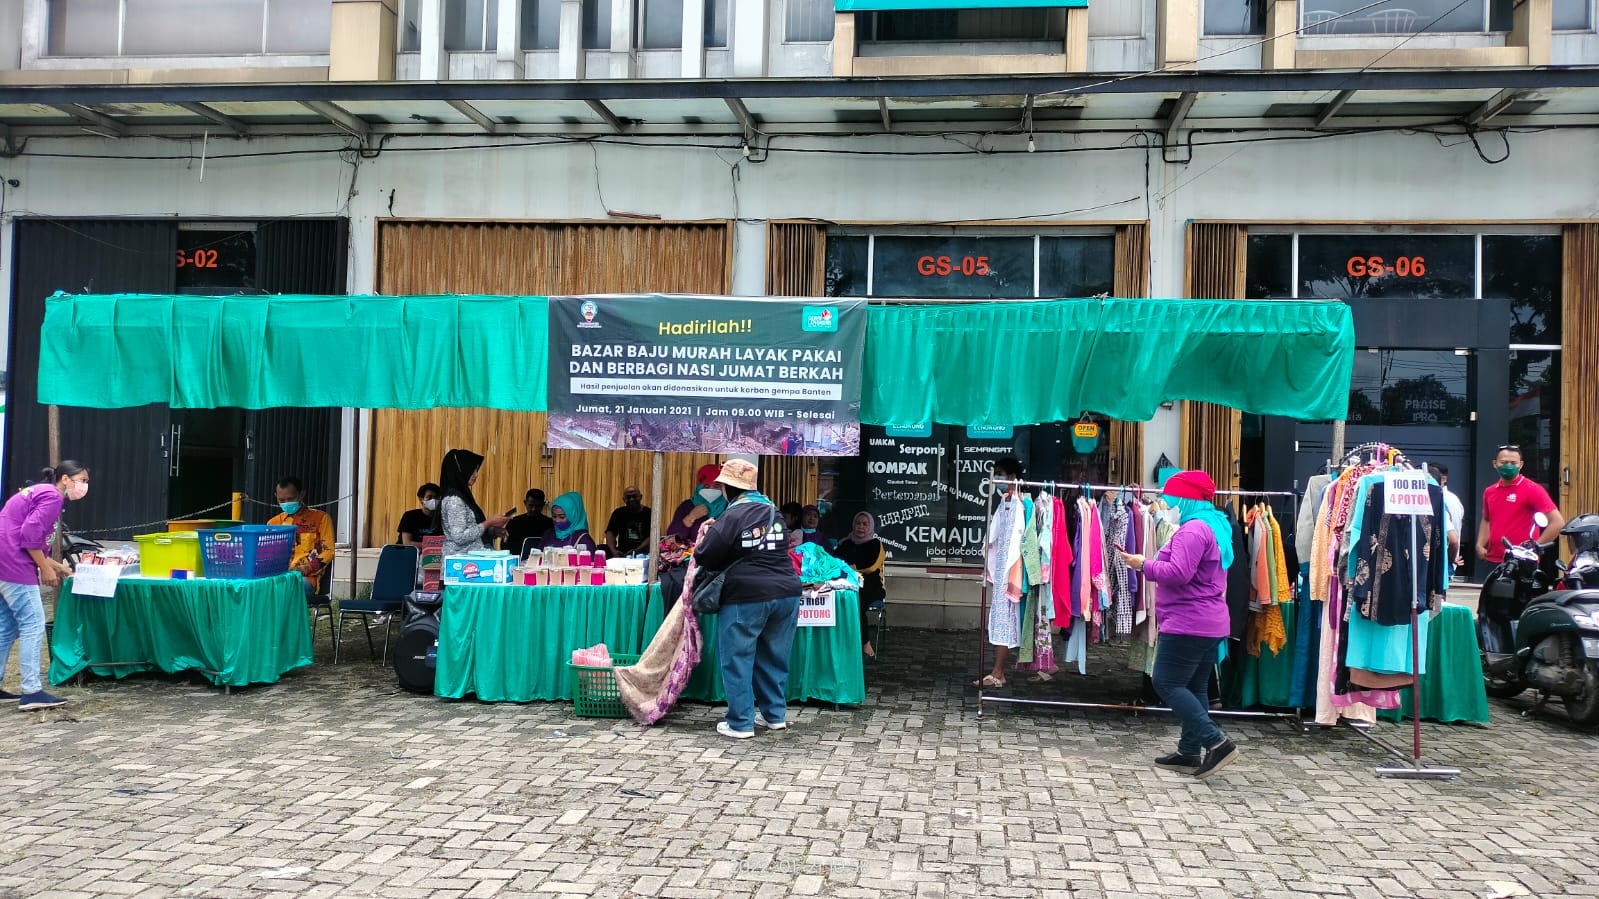 Yuk, Beli Pakaian di Bazar Gerai Lengkong, Belanja Sekaligus Bersolidaritas